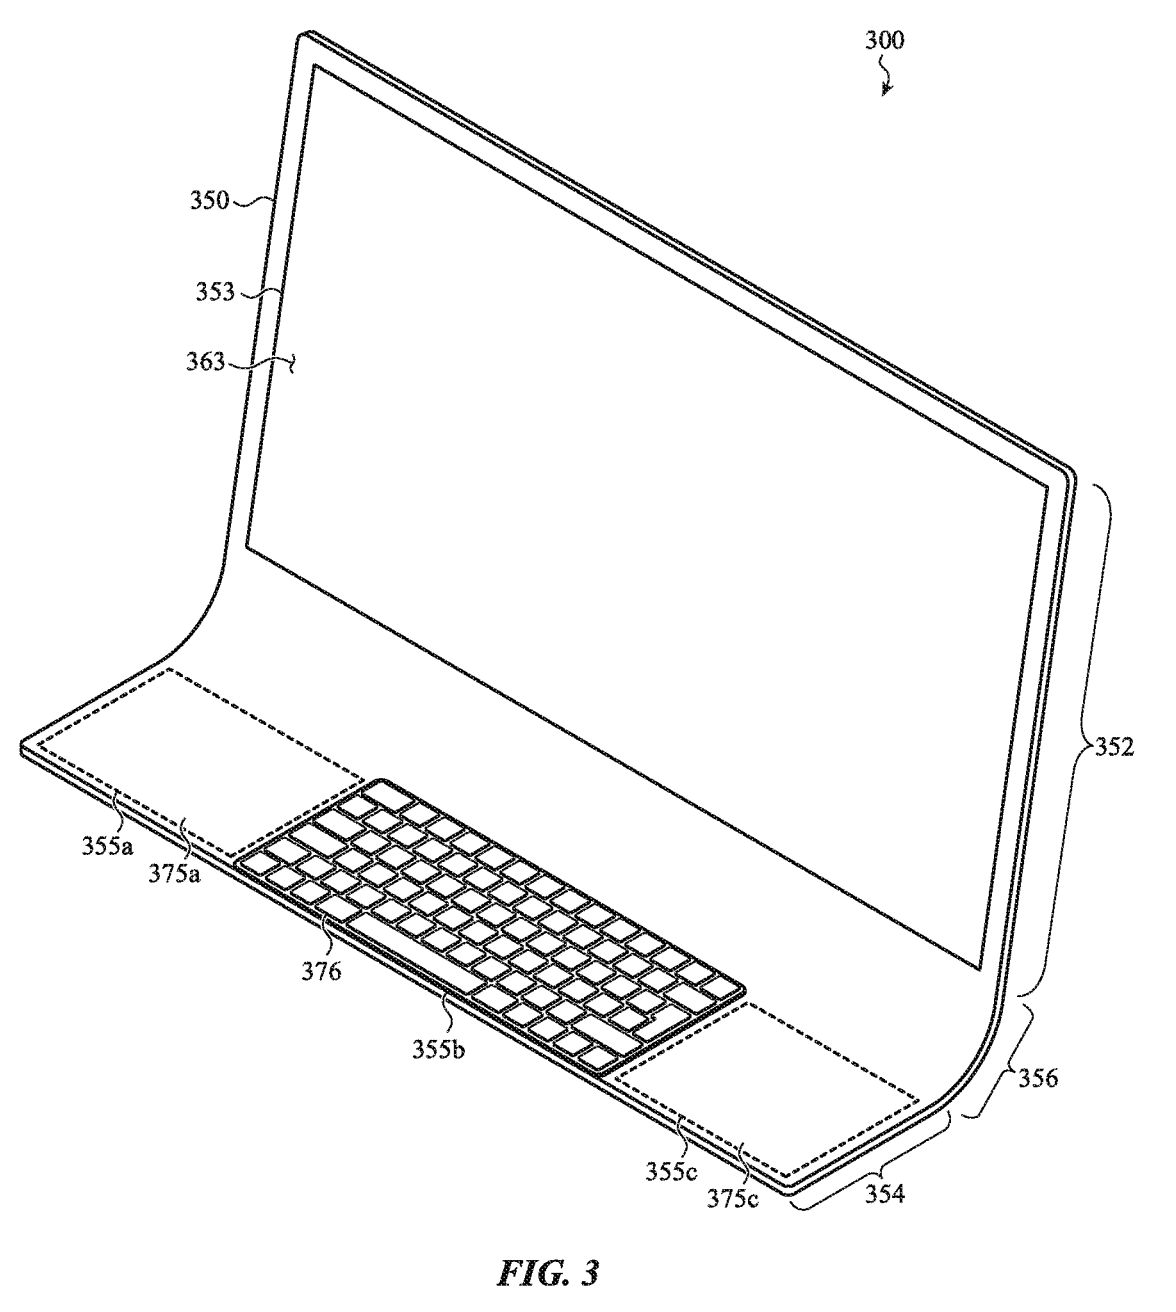 Patente mostrando un nuevo diseño de iMac hecho de una sola pieza de cristal